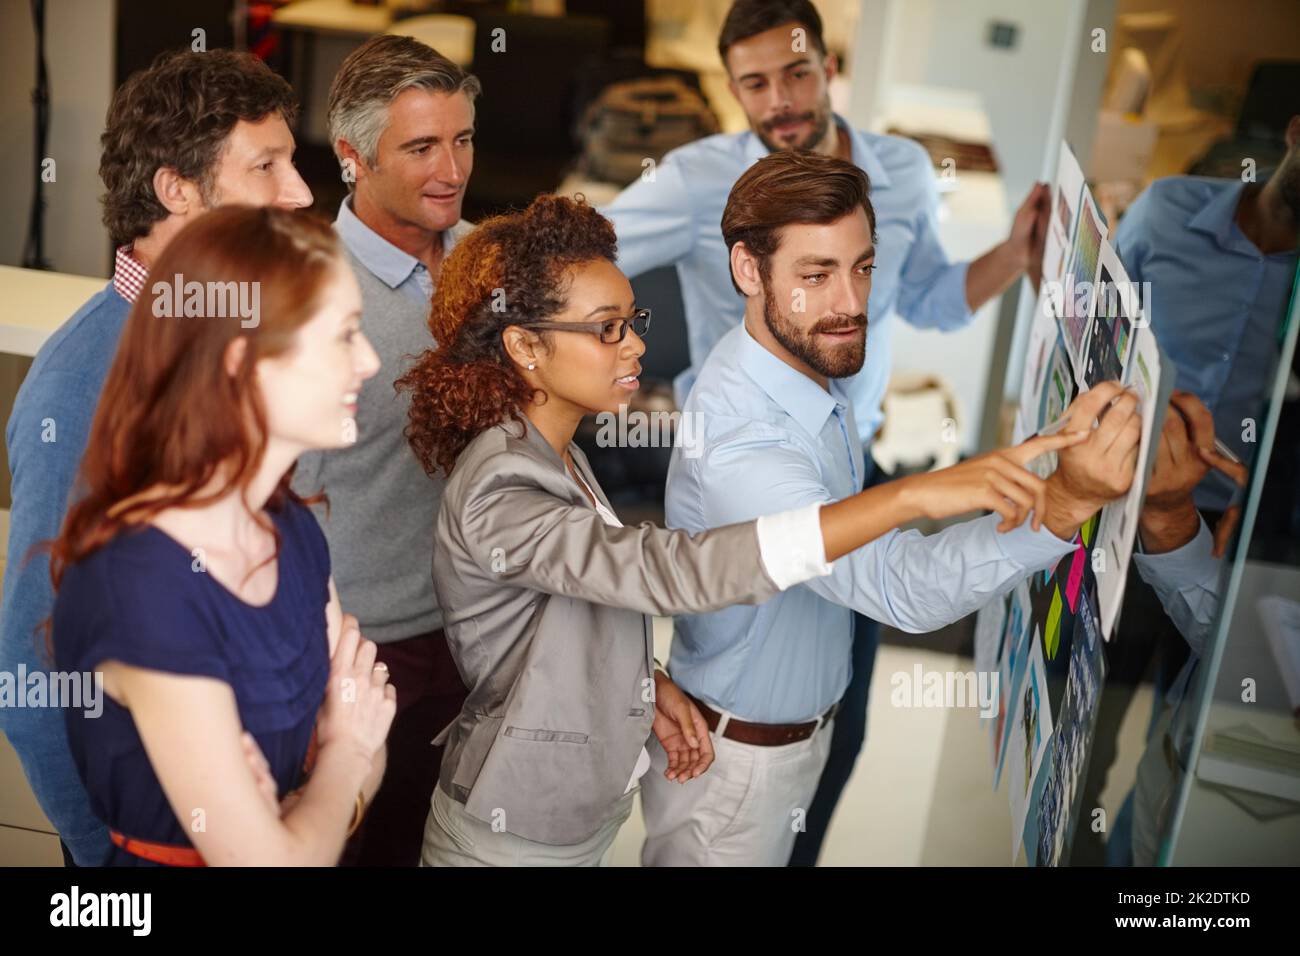 Teamarbeit nimmt ihnen Platz. Aufnahme einer Gruppe von Kollegen, die bei der Arbeit eine Brainstorming-Sitzung abhalten. Stockfoto